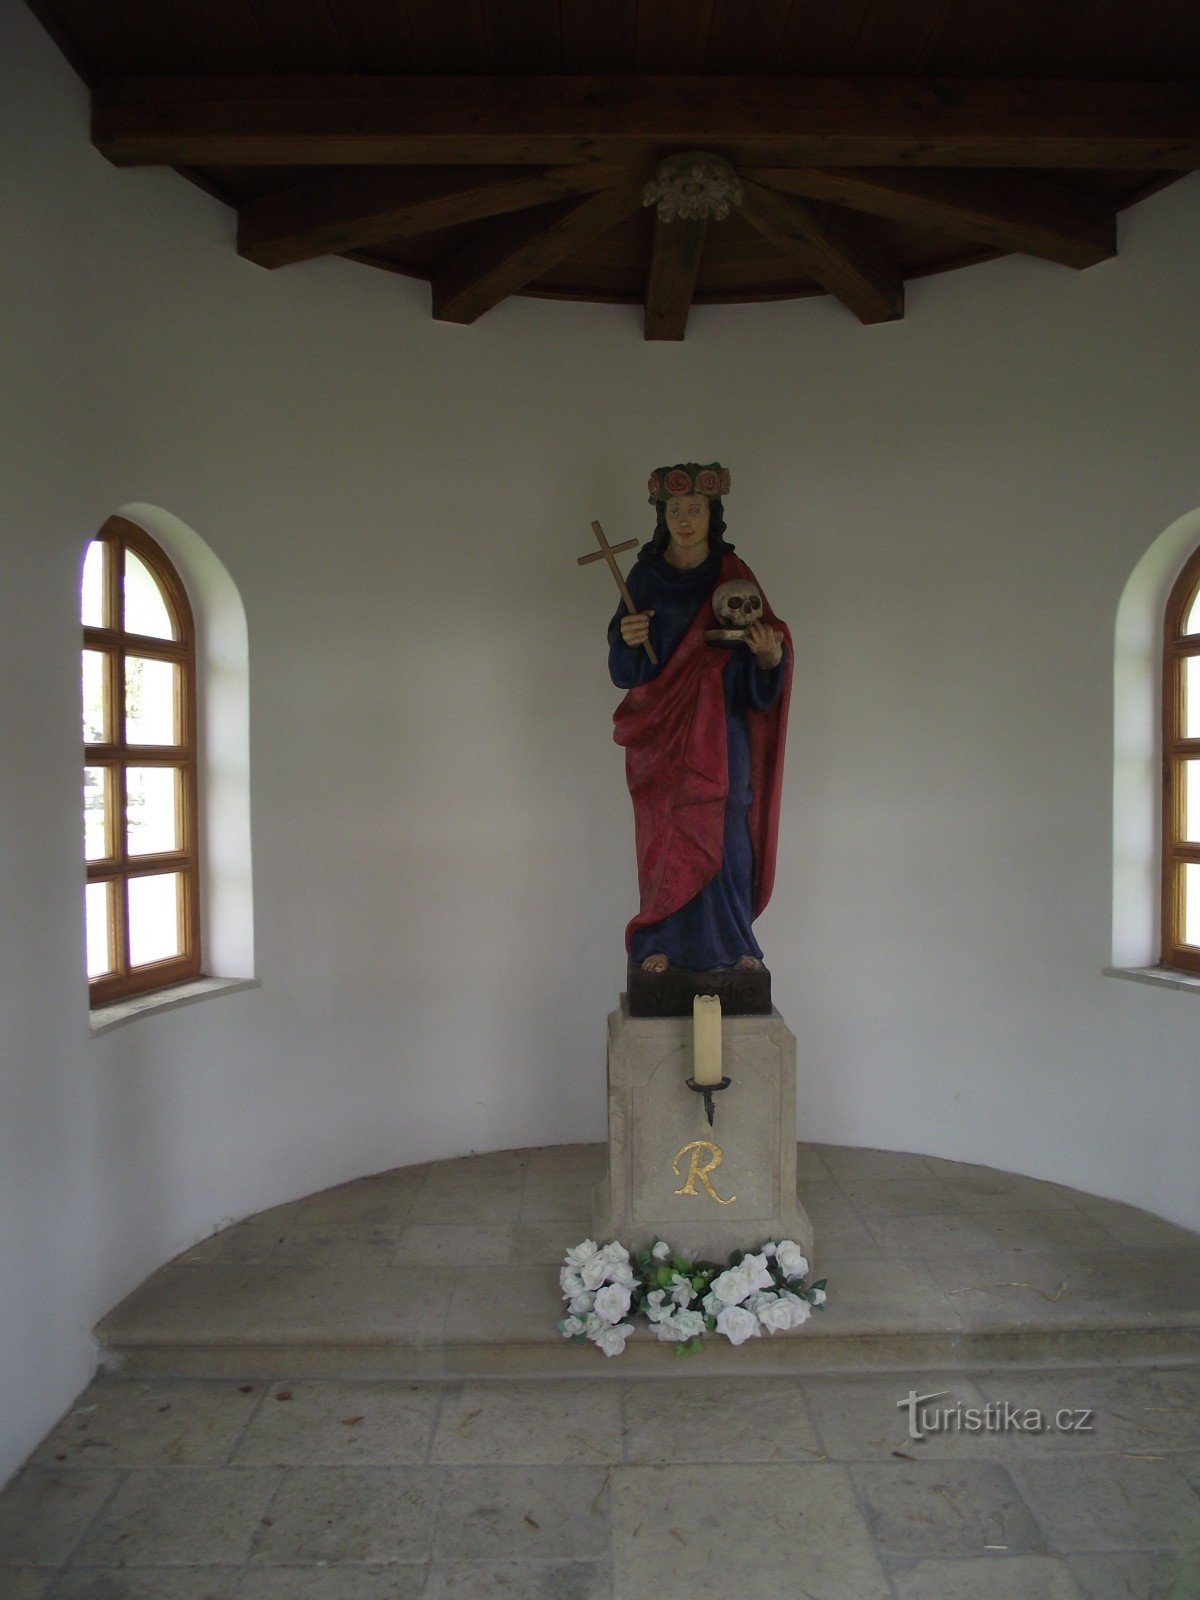 interieur van de kapel met het standbeeld van St. Rosalie